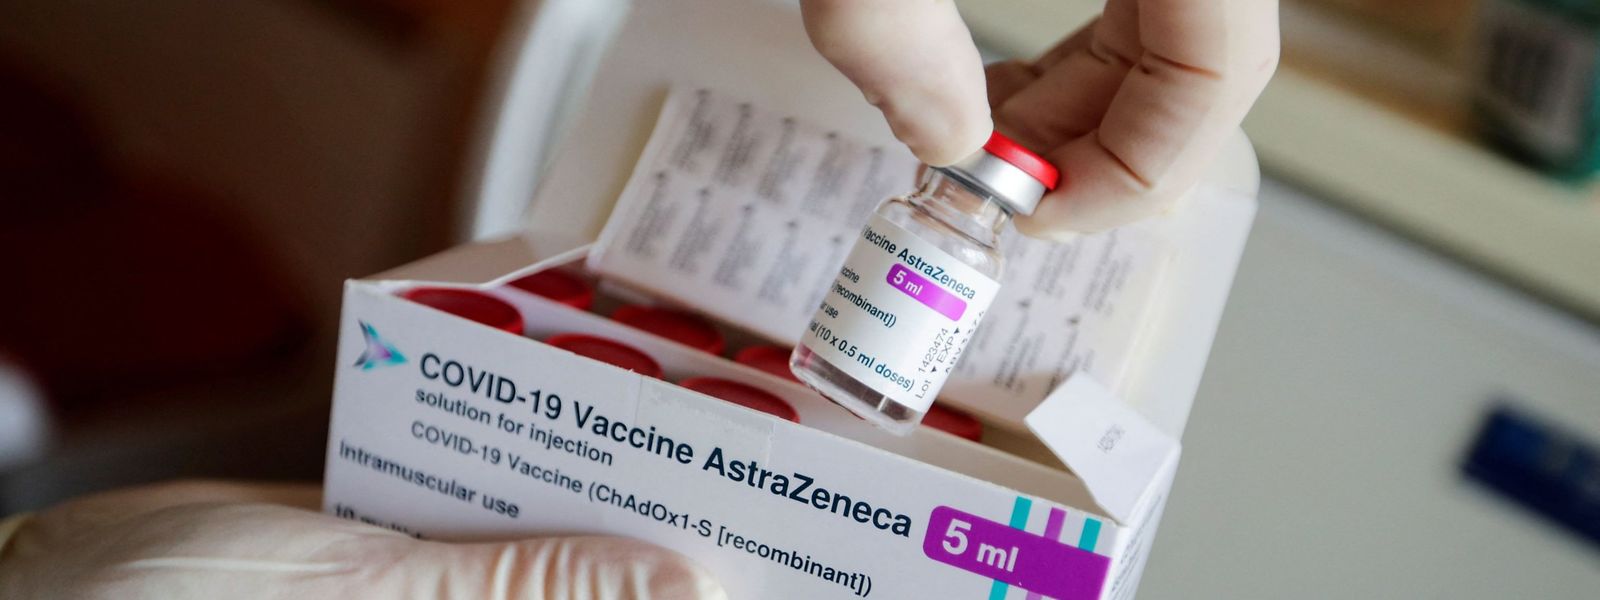 Il n'y a désormais plus de limitation d'emploi du vaccin AstraZeneca au Luxembourg.